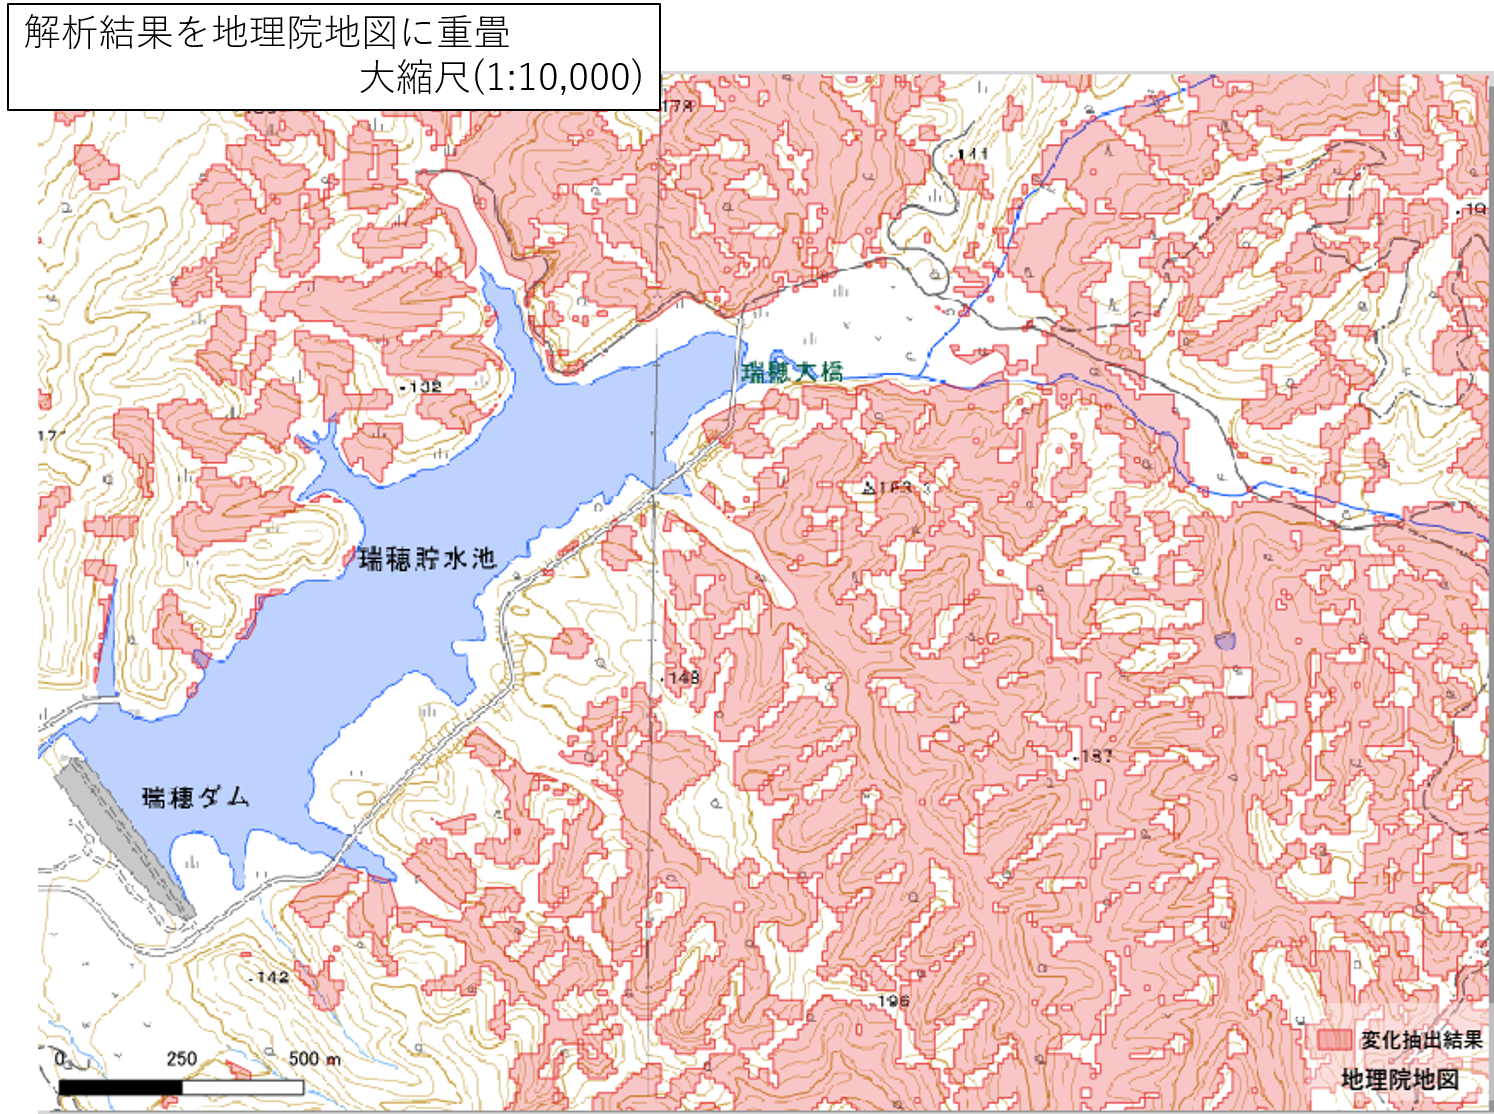 2018 Hokkaido Eastern Iburi Earthquake Atsuma Town, Hokkaido Prefecture, etc.